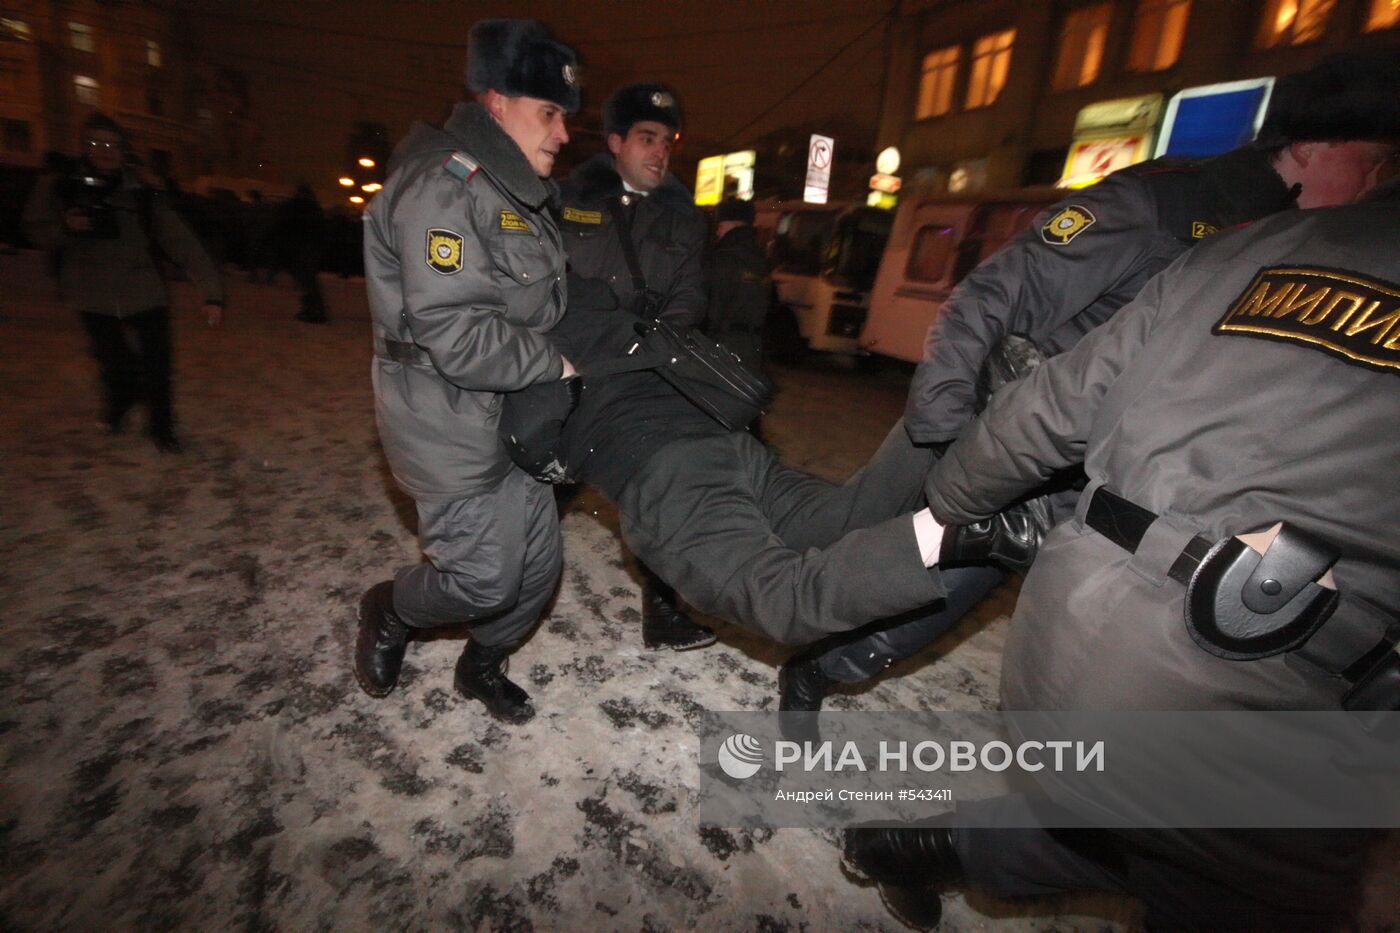 Несанкционированный митинг 31 декабря в Москве